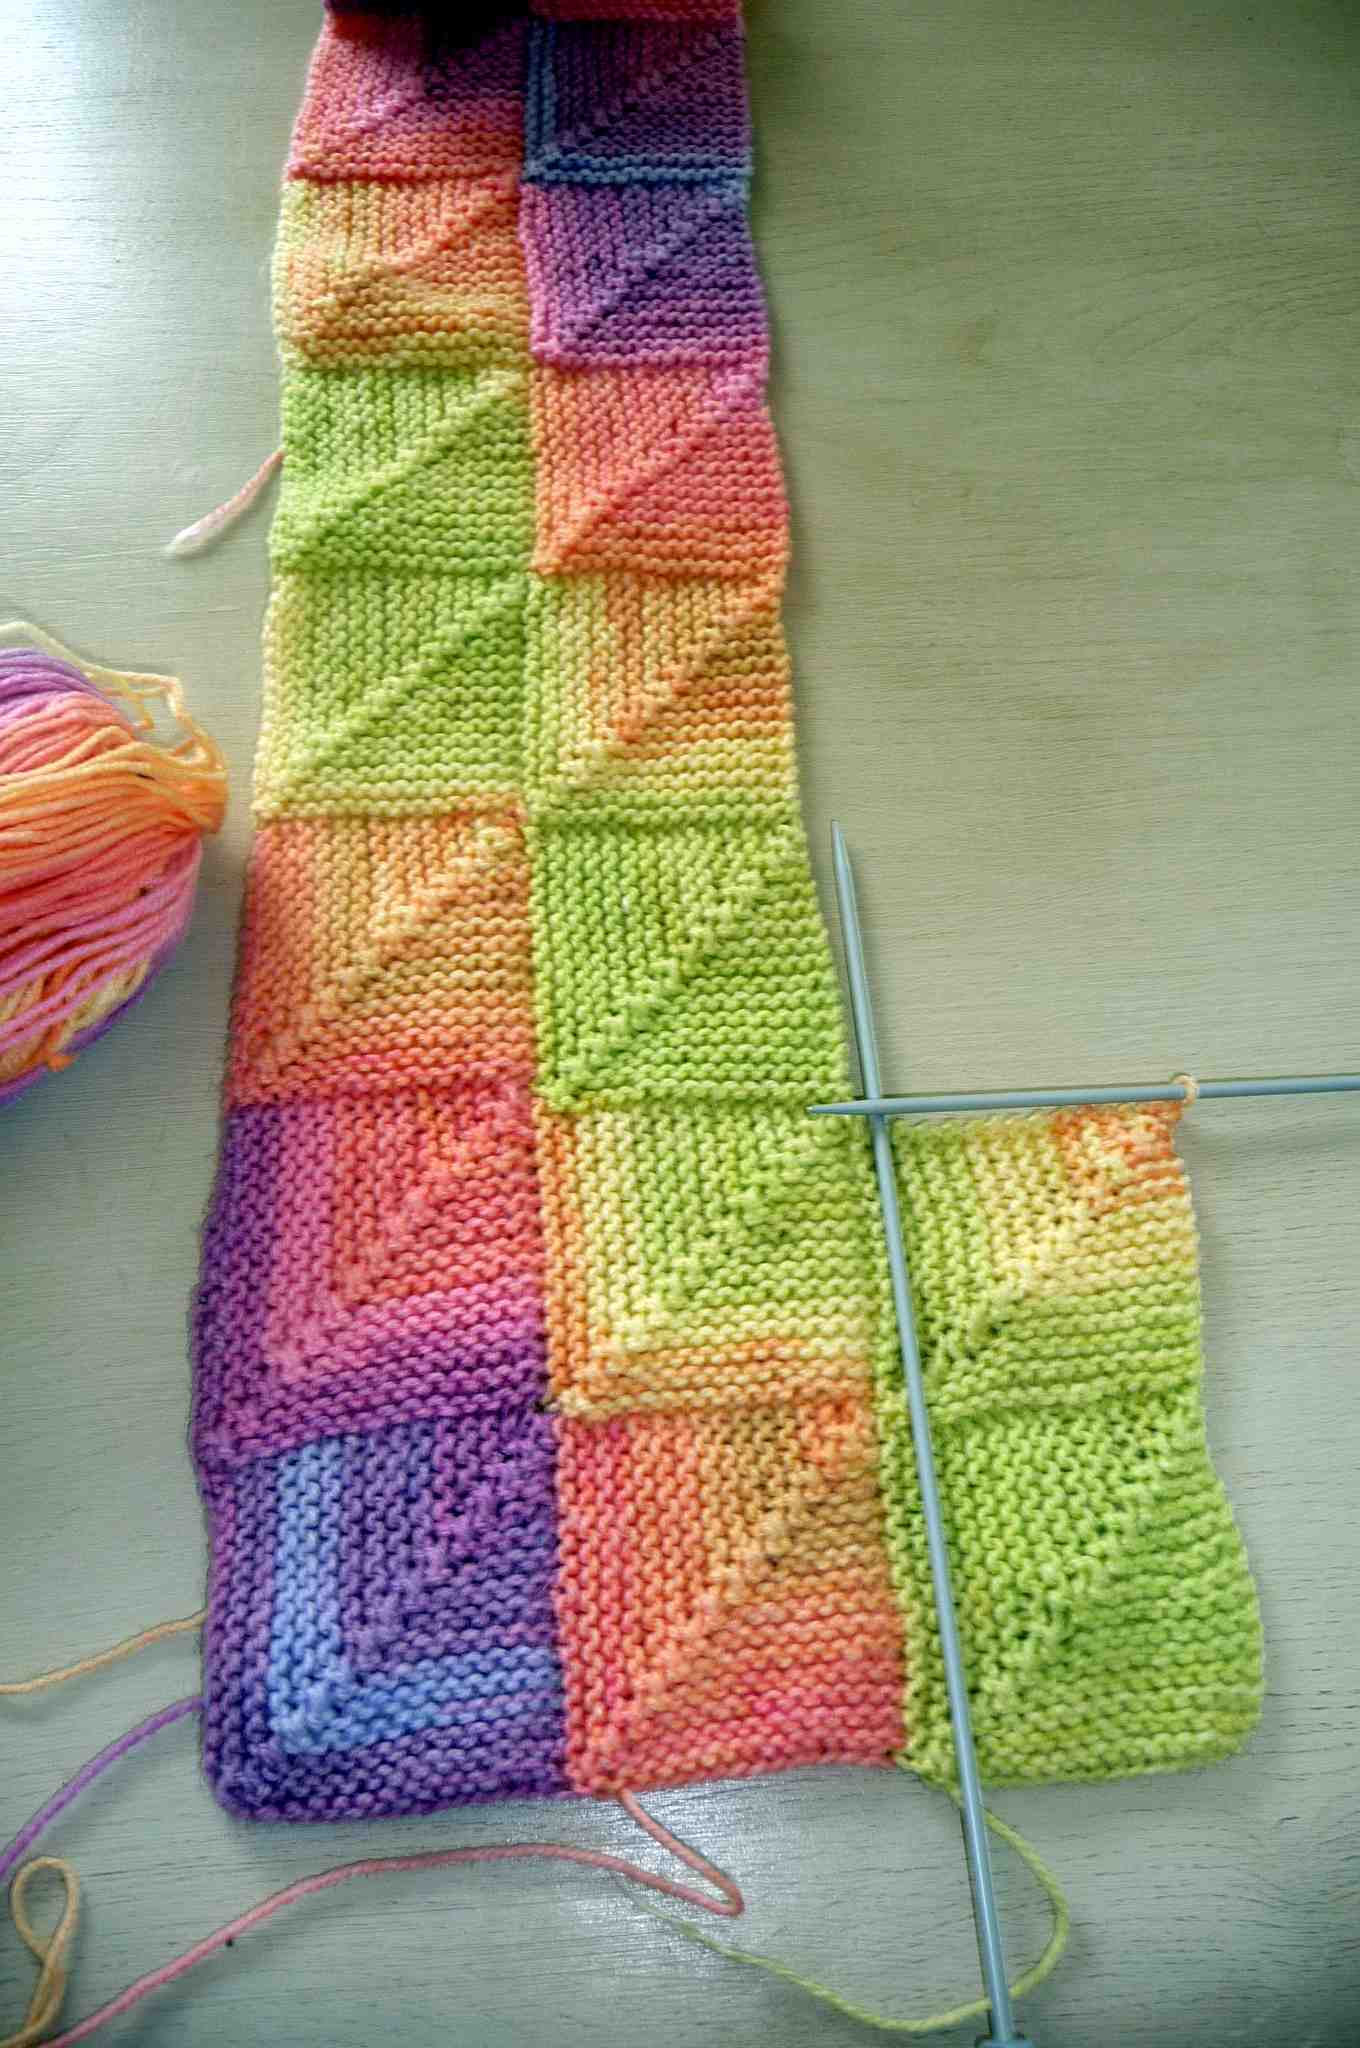 Comment choisir la taille des aiguilles à tricoter?